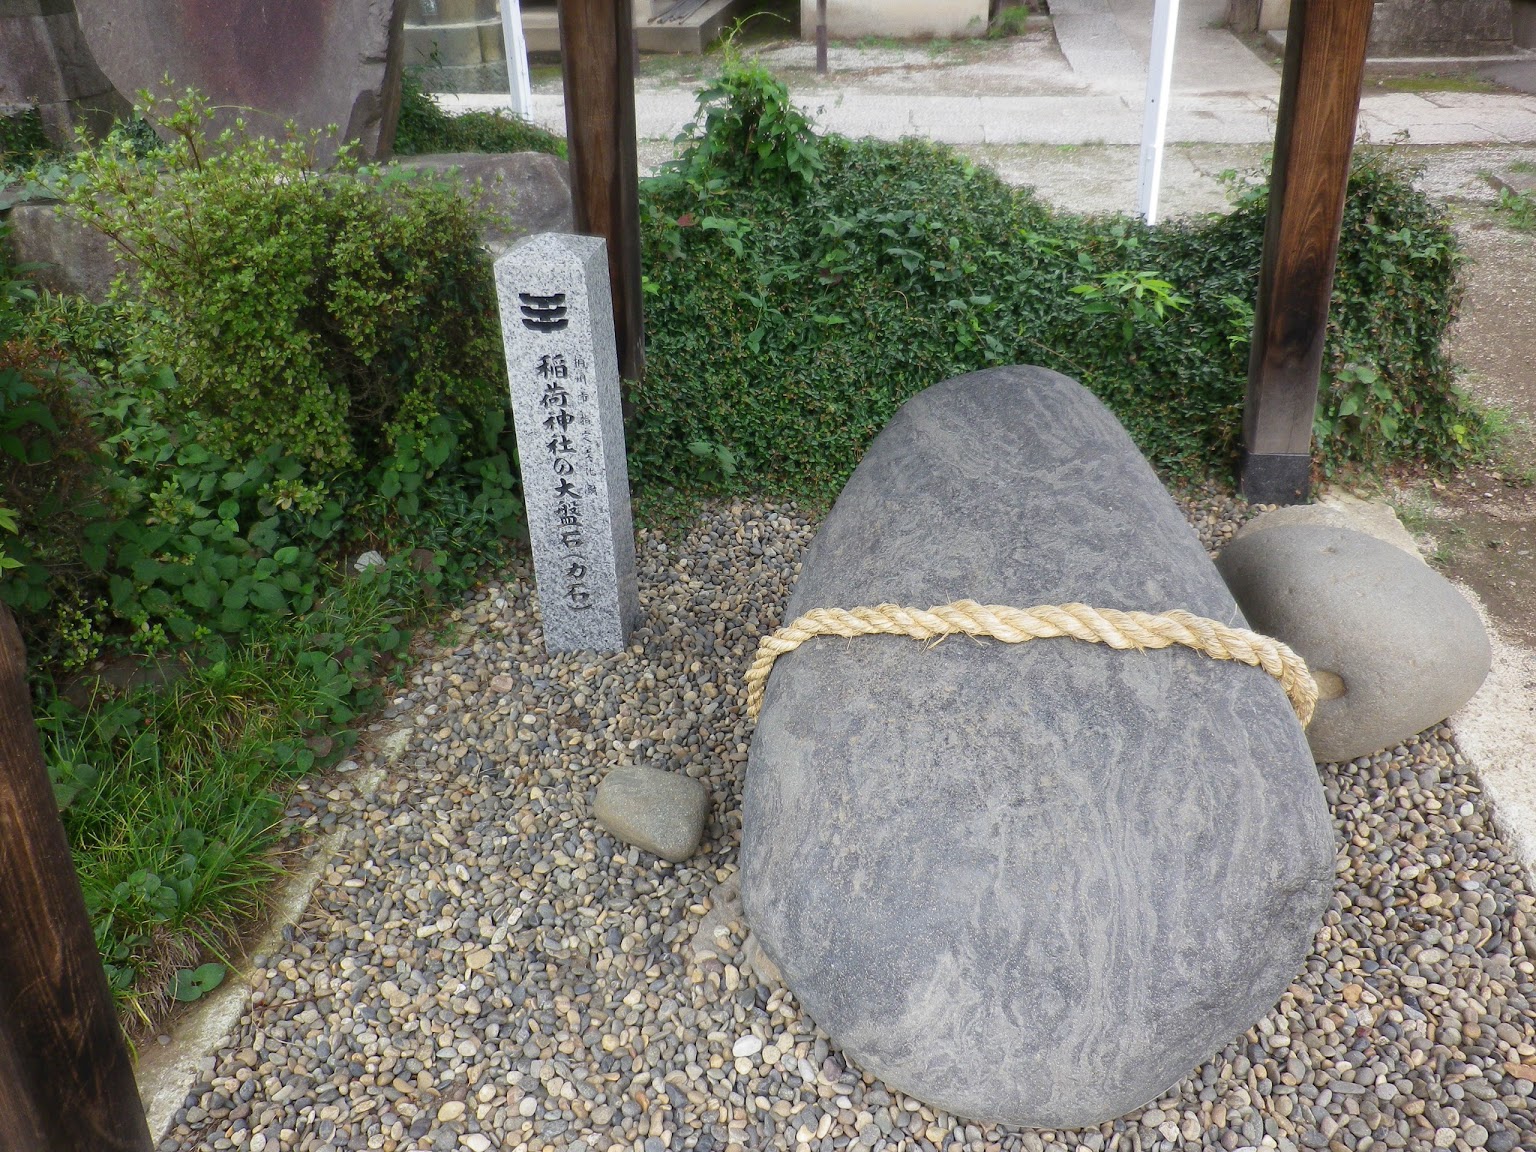 三ノ宮卯之助の大盤石 — Sannomiya Unosuke's large stone lead image